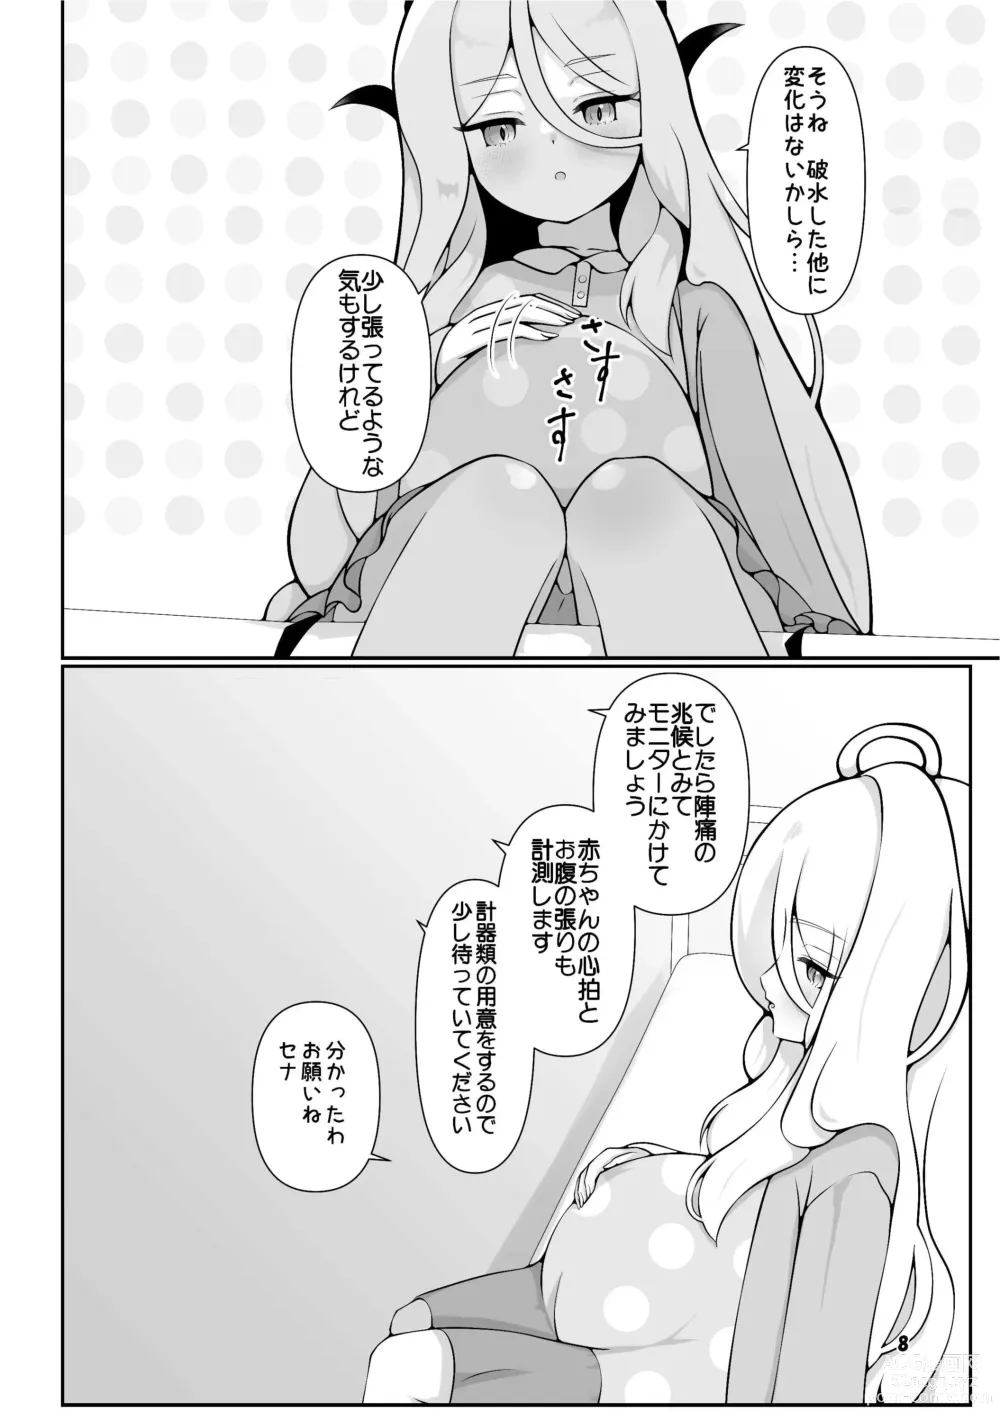 Page 8 of doujinshi Hina-chan ga ganbatte akachan oumu hon